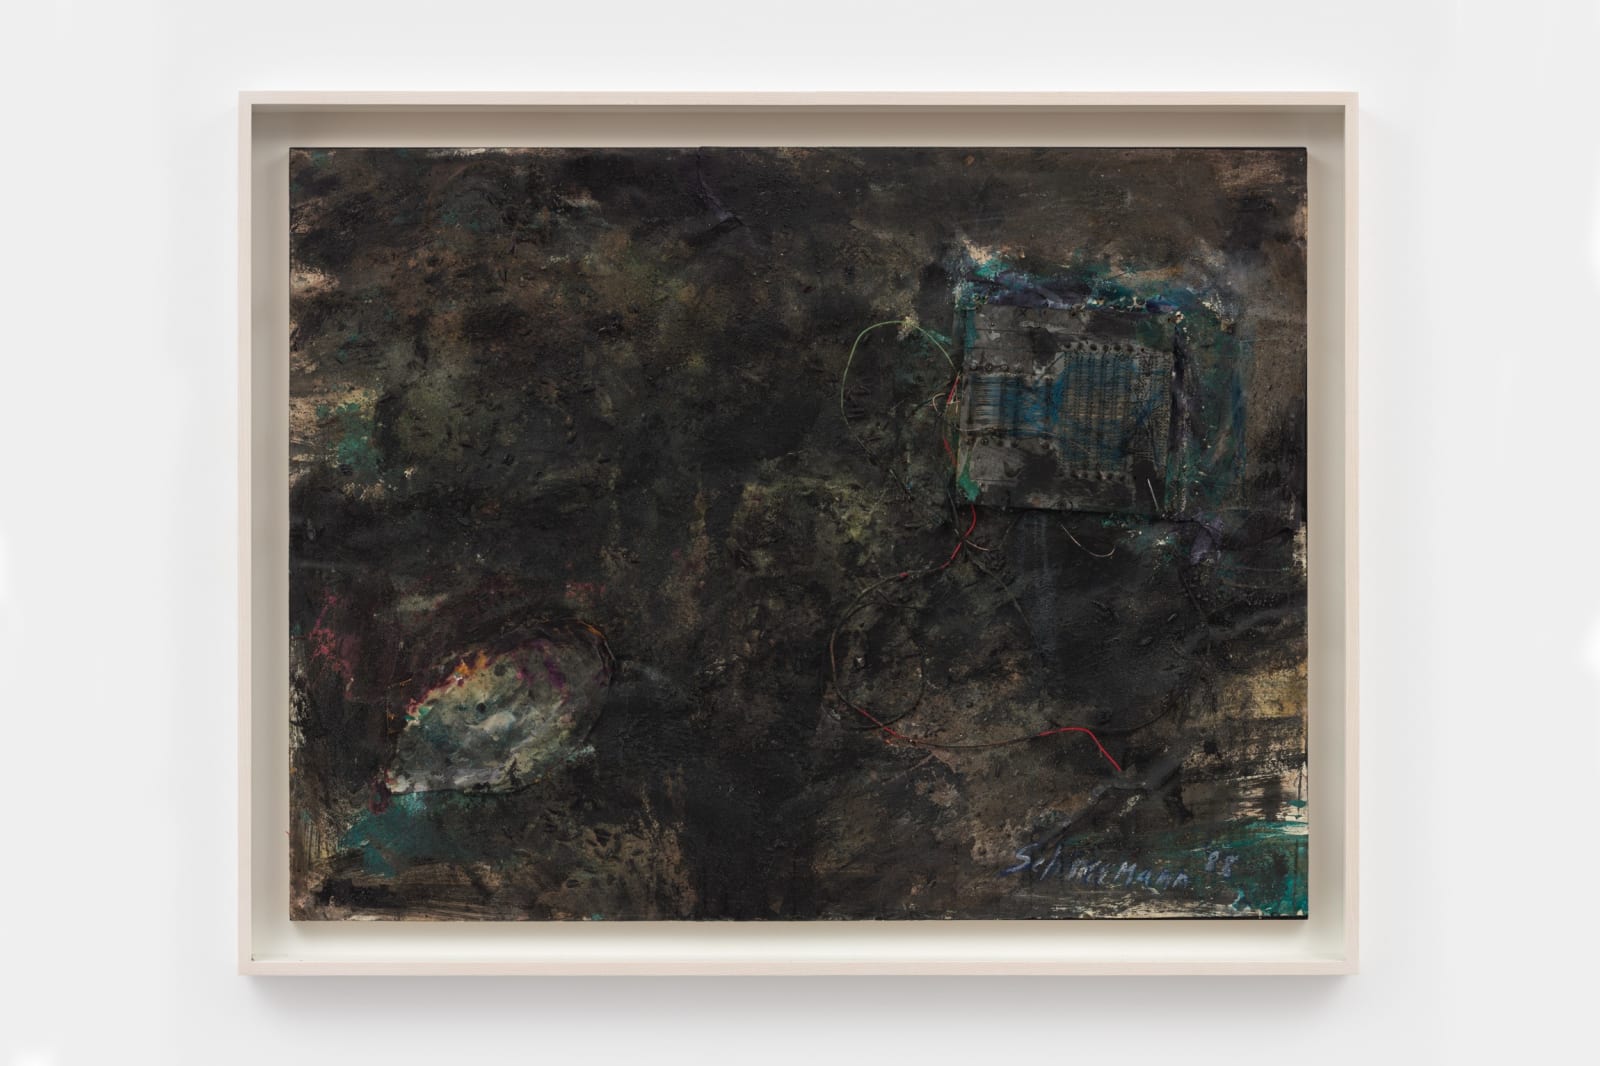 Carolee Schneemann, Untitled (Black work II from Dust series), 1988